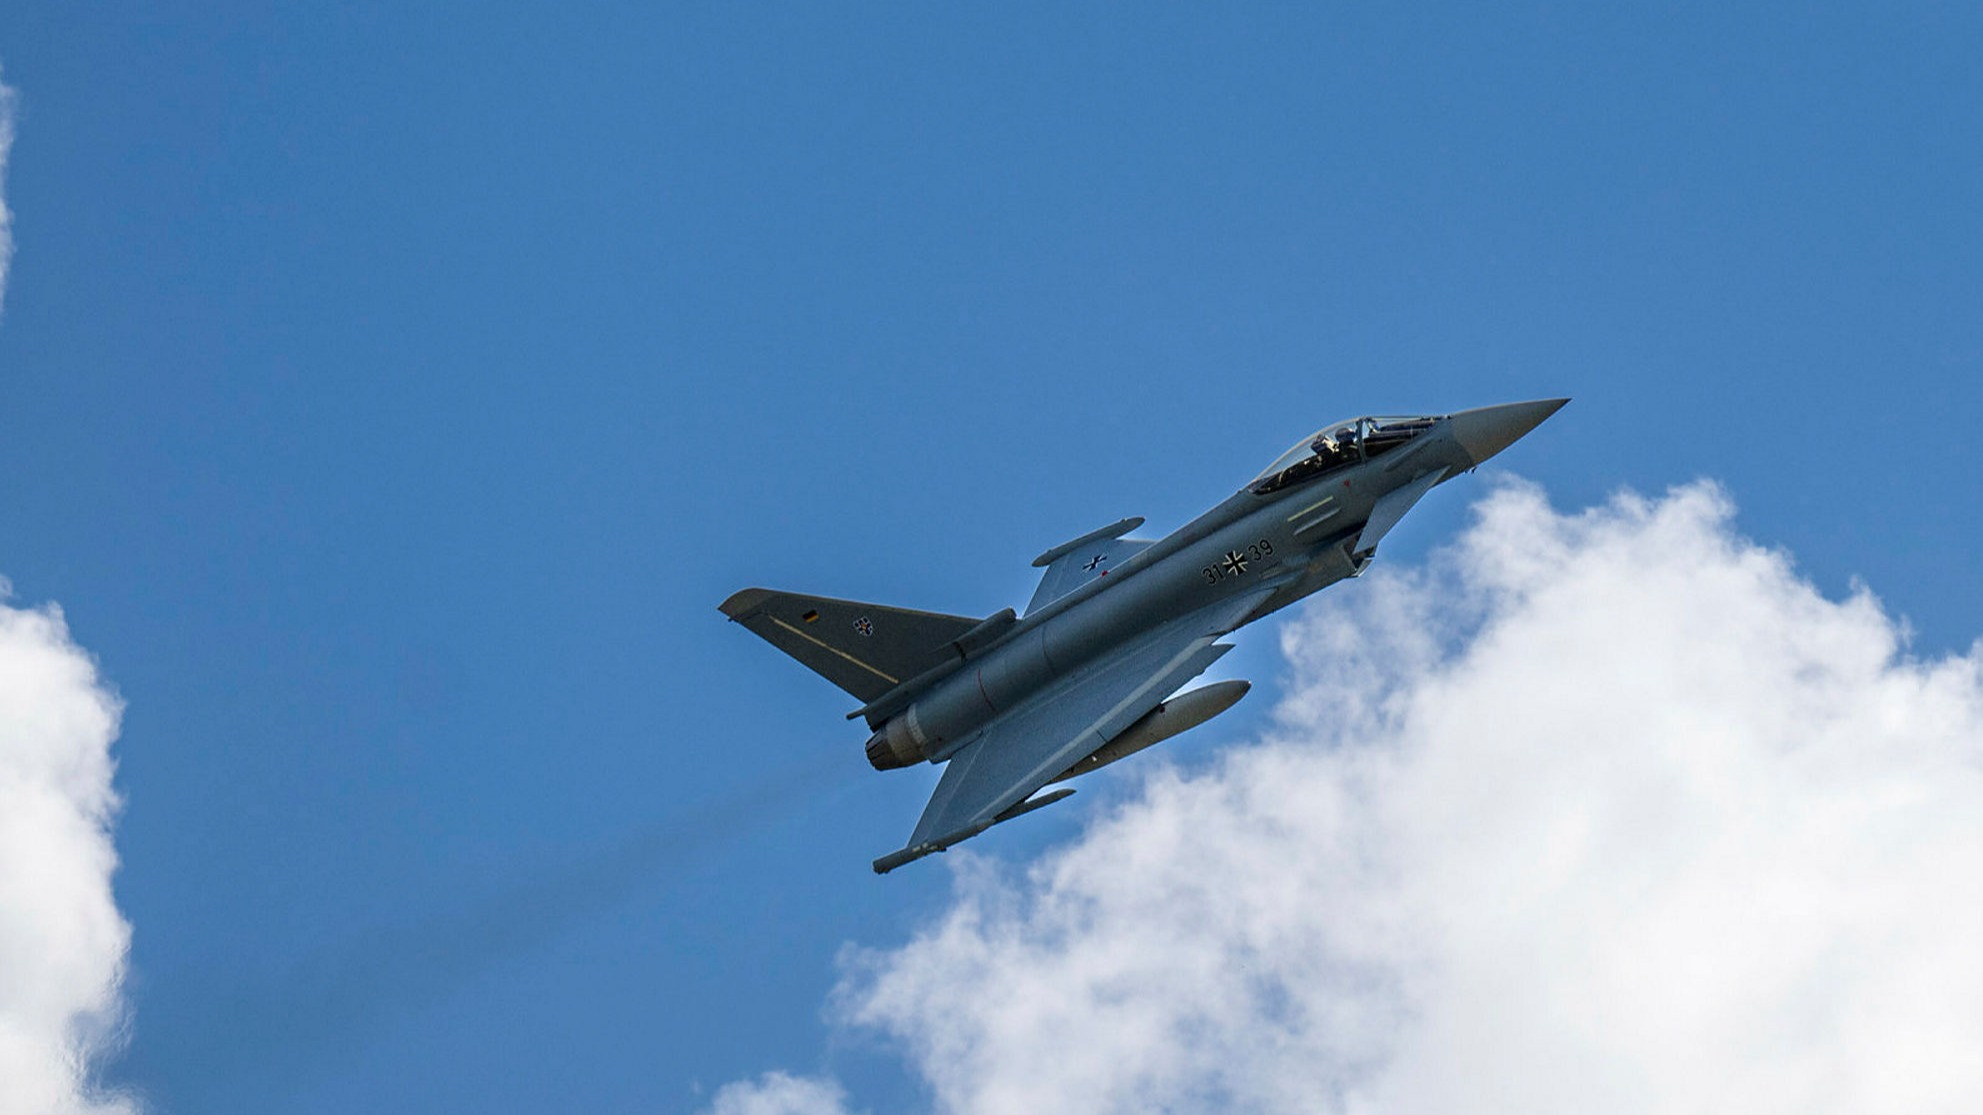 f 35 vs eurofighter typhoon